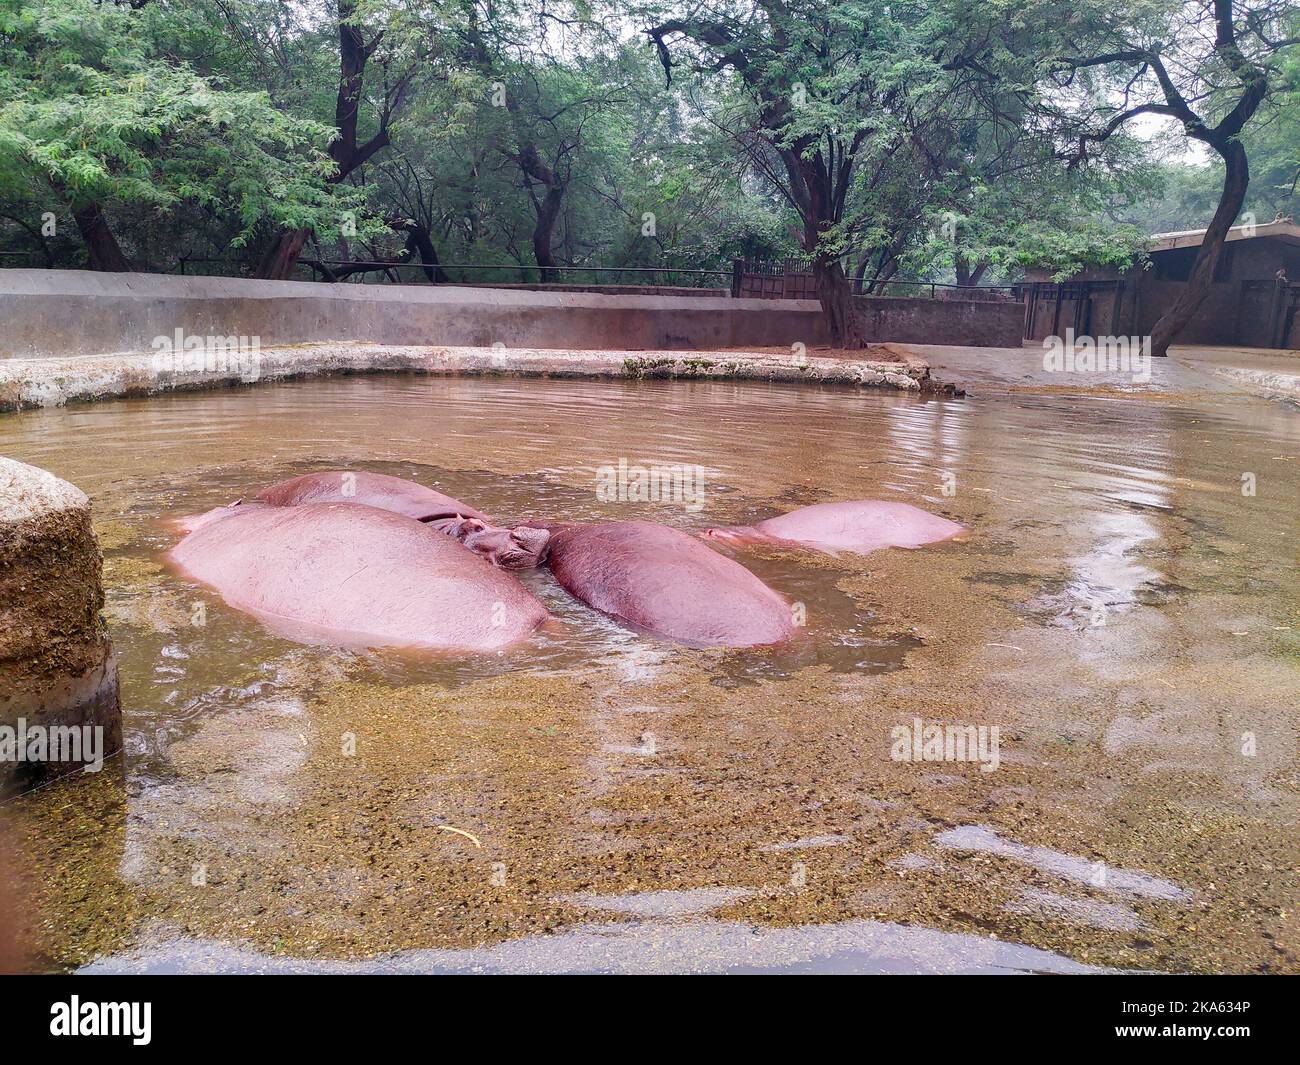 Novembre 2nd 2019 Nuova Delhi India. Ippopotamo, anche chiamato l'ippopotamo, all'interno dello stagno dell'acqua al nuovo Zoo di Delhi. Foto Stock